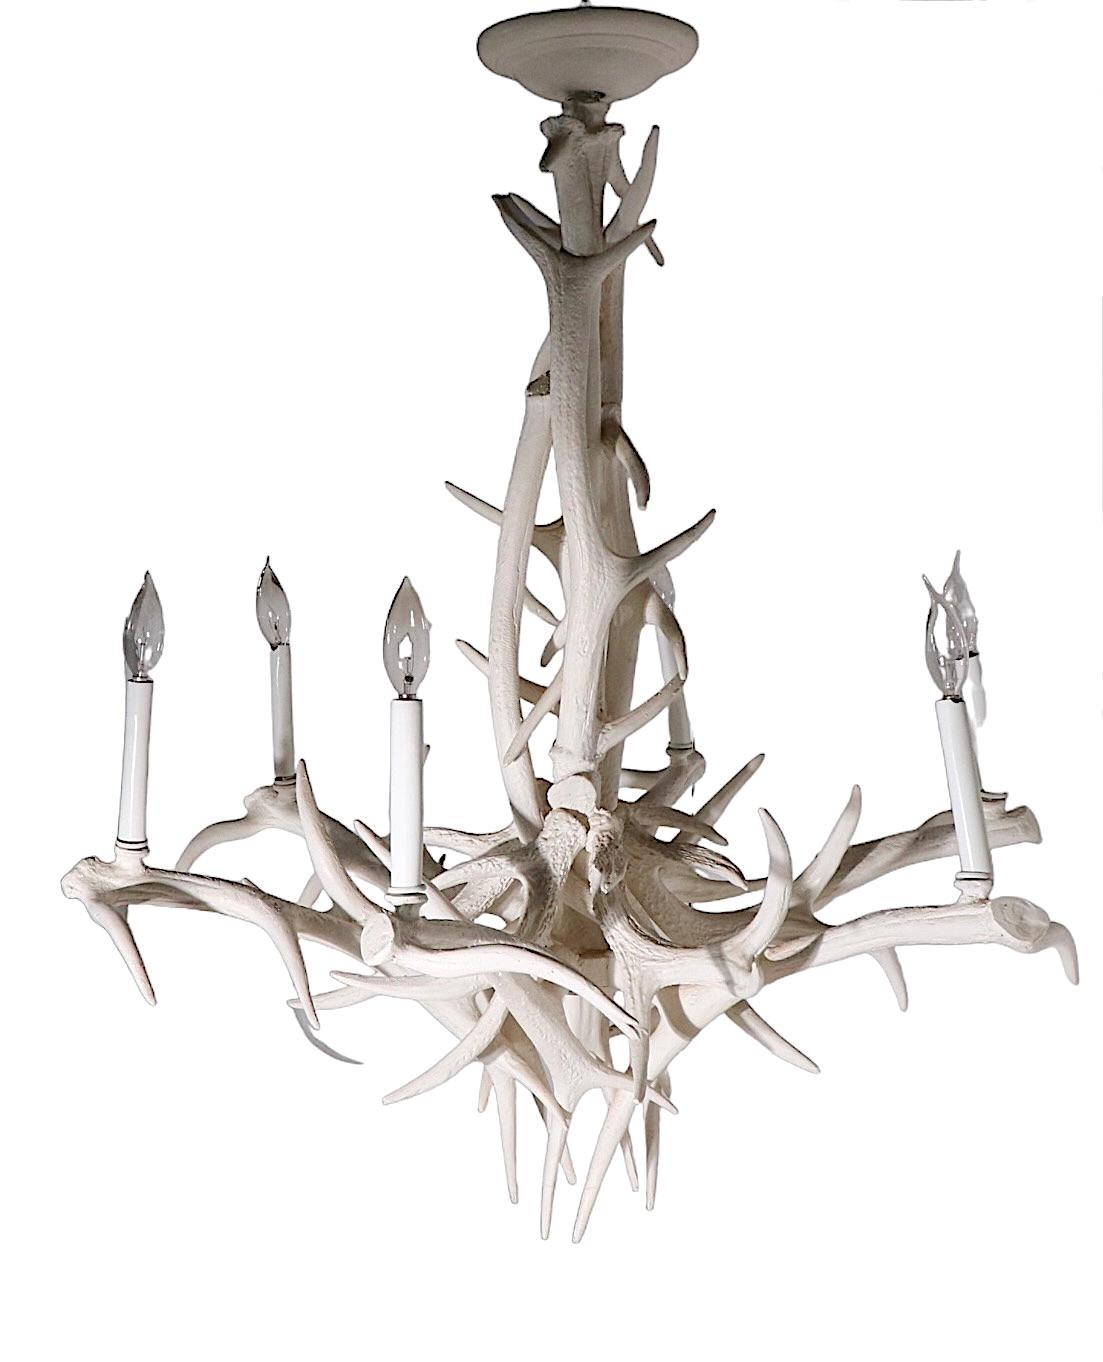 Faszinierende Geweihimitation aus Aluminiumguss in antikem Weiß auf weißem Grund. Der Kronleuchter verfügt über sechs Kerzenglühbirnen, die mit Standard-Schraubglühbirnen bestückt werden können. Er ist in gutem Zustand und bereit zur Installation.